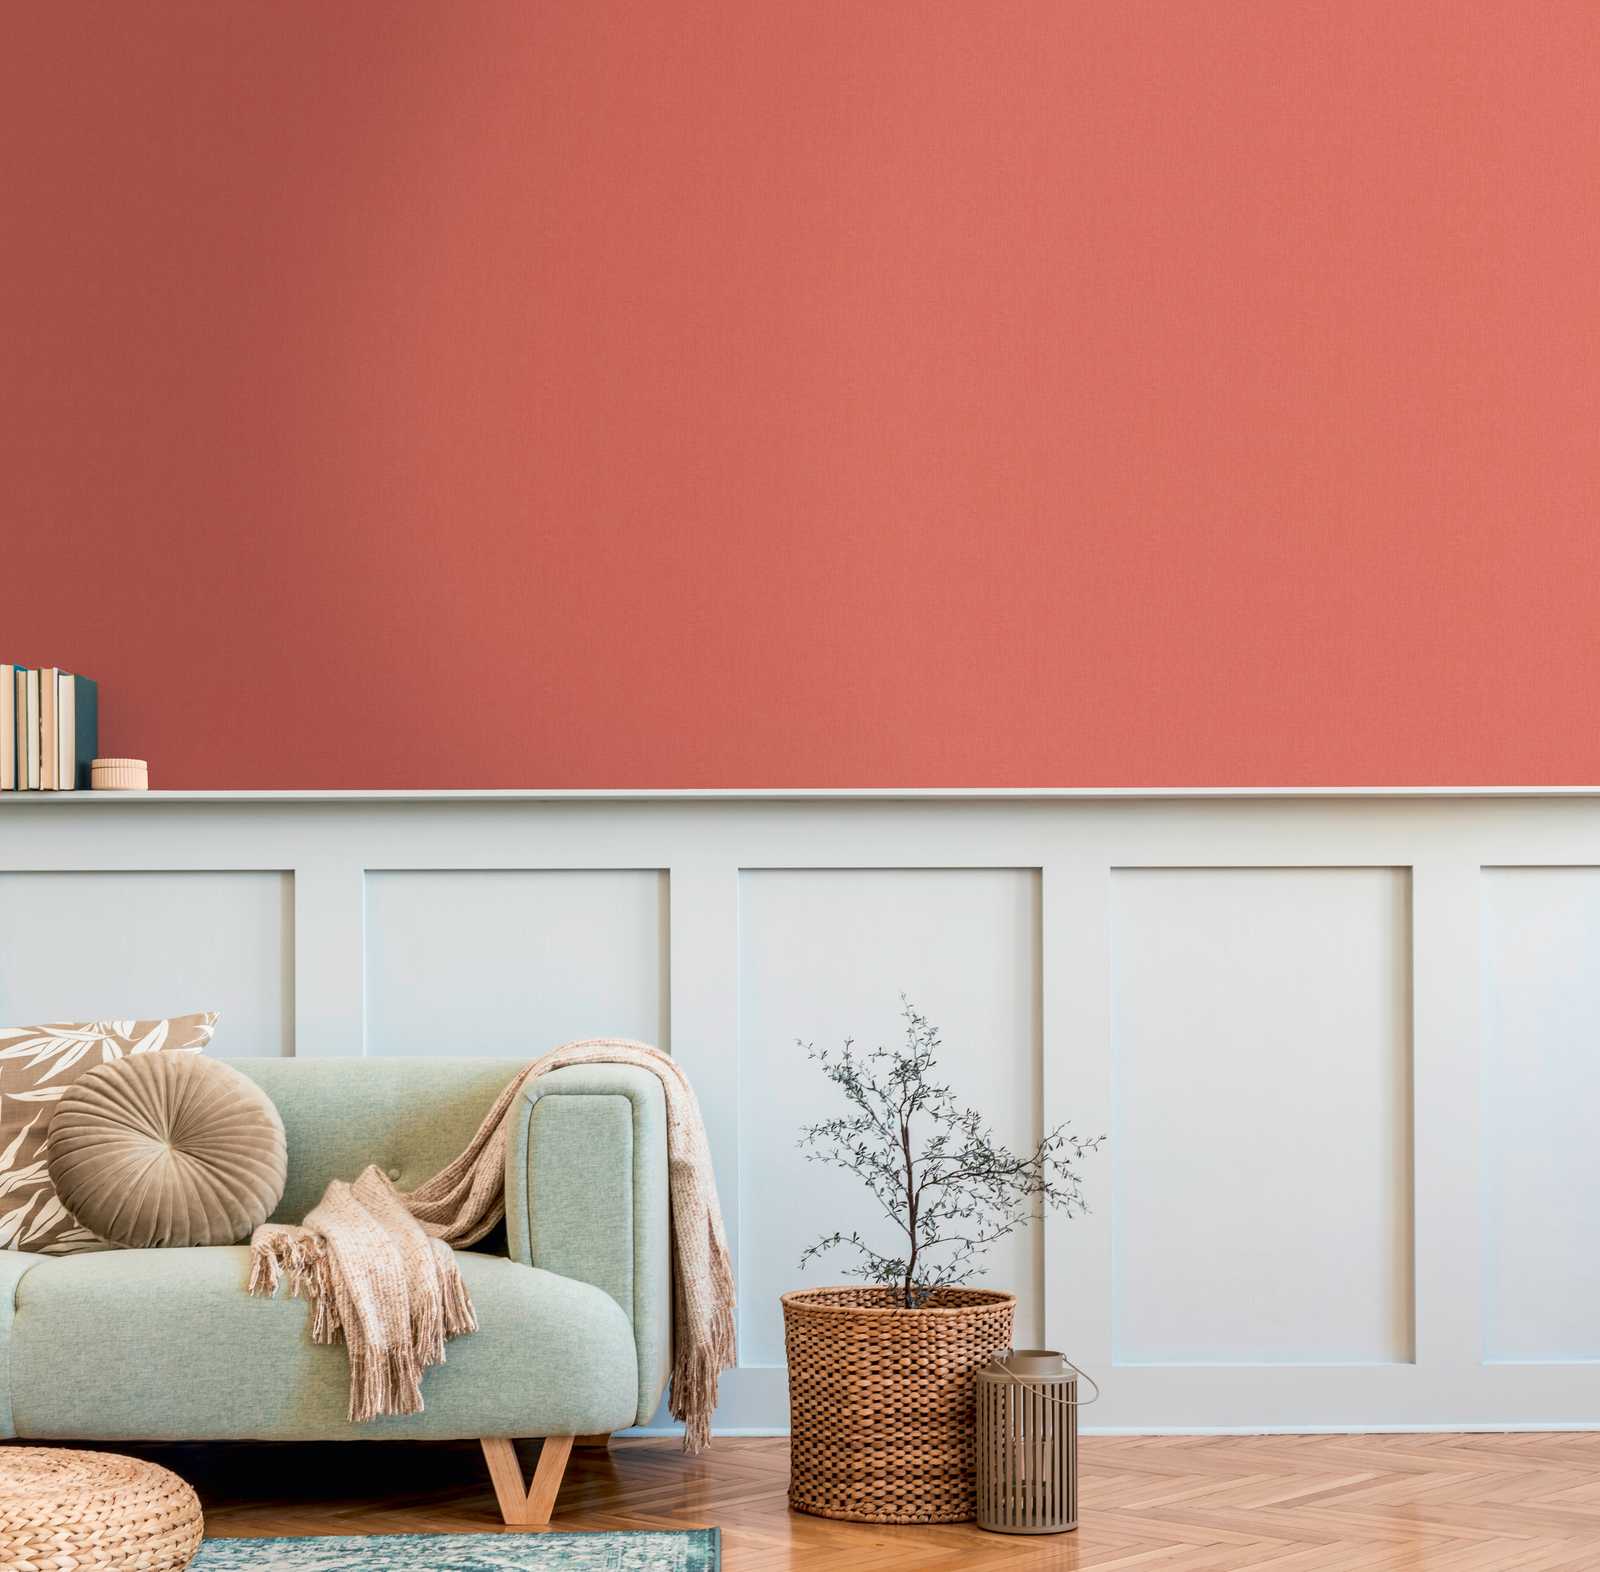             Behang Oranje met Linnen Textuur & Terracotta Kleur
        